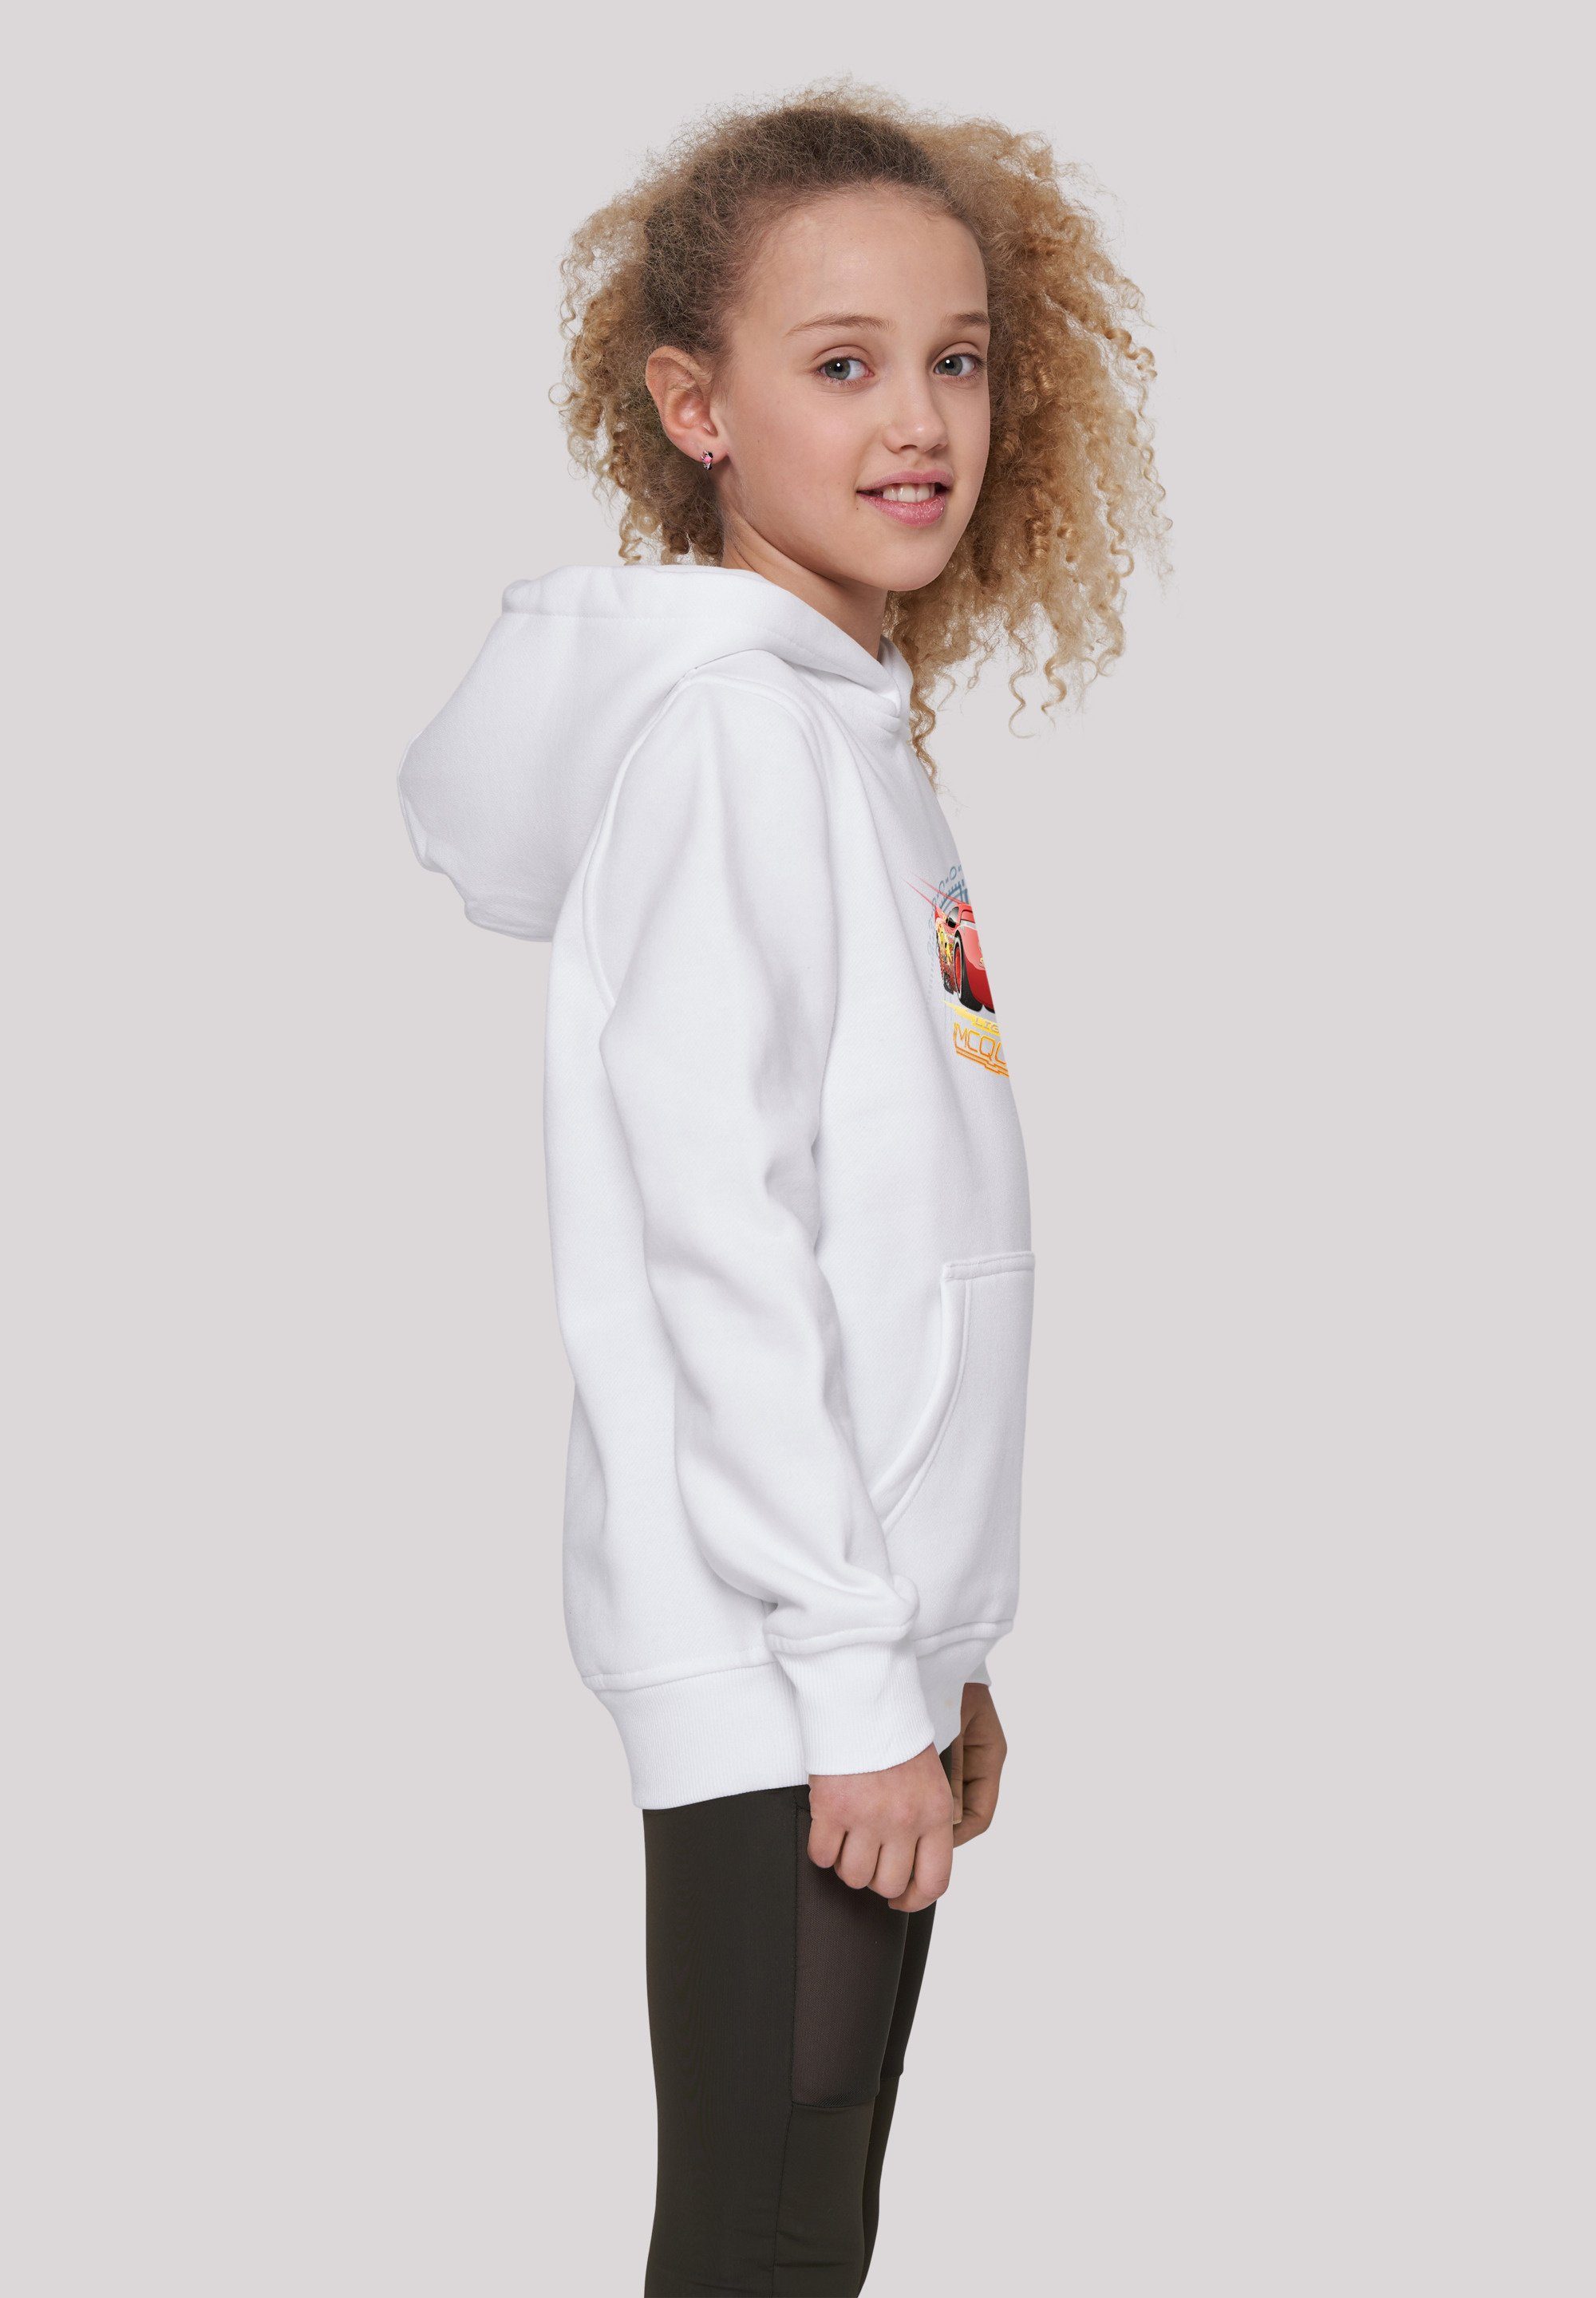 weiß Kinder,Premium McQueen Lightning Merch,Jungen,Mädchen,Bedruckt Unisex Sweatshirt Disney Cars F4NT4STIC